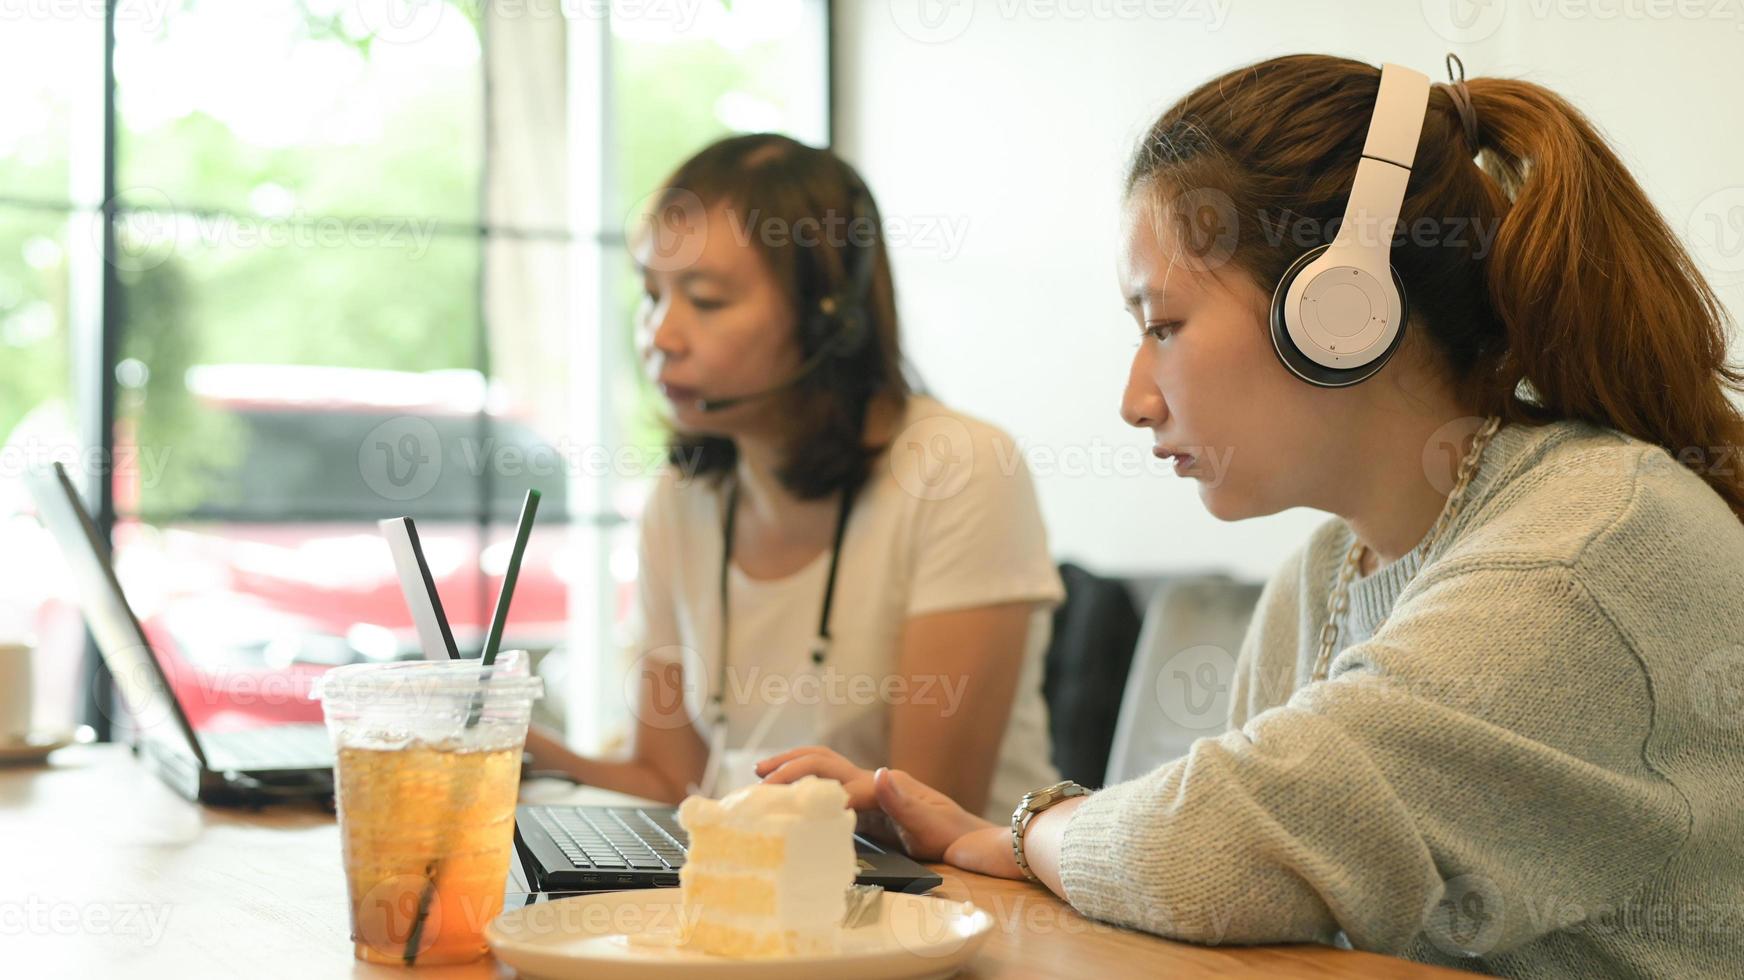 Zwei junge Frauen mit Kopfhörern arbeiten mit Laptops in einem Café. foto